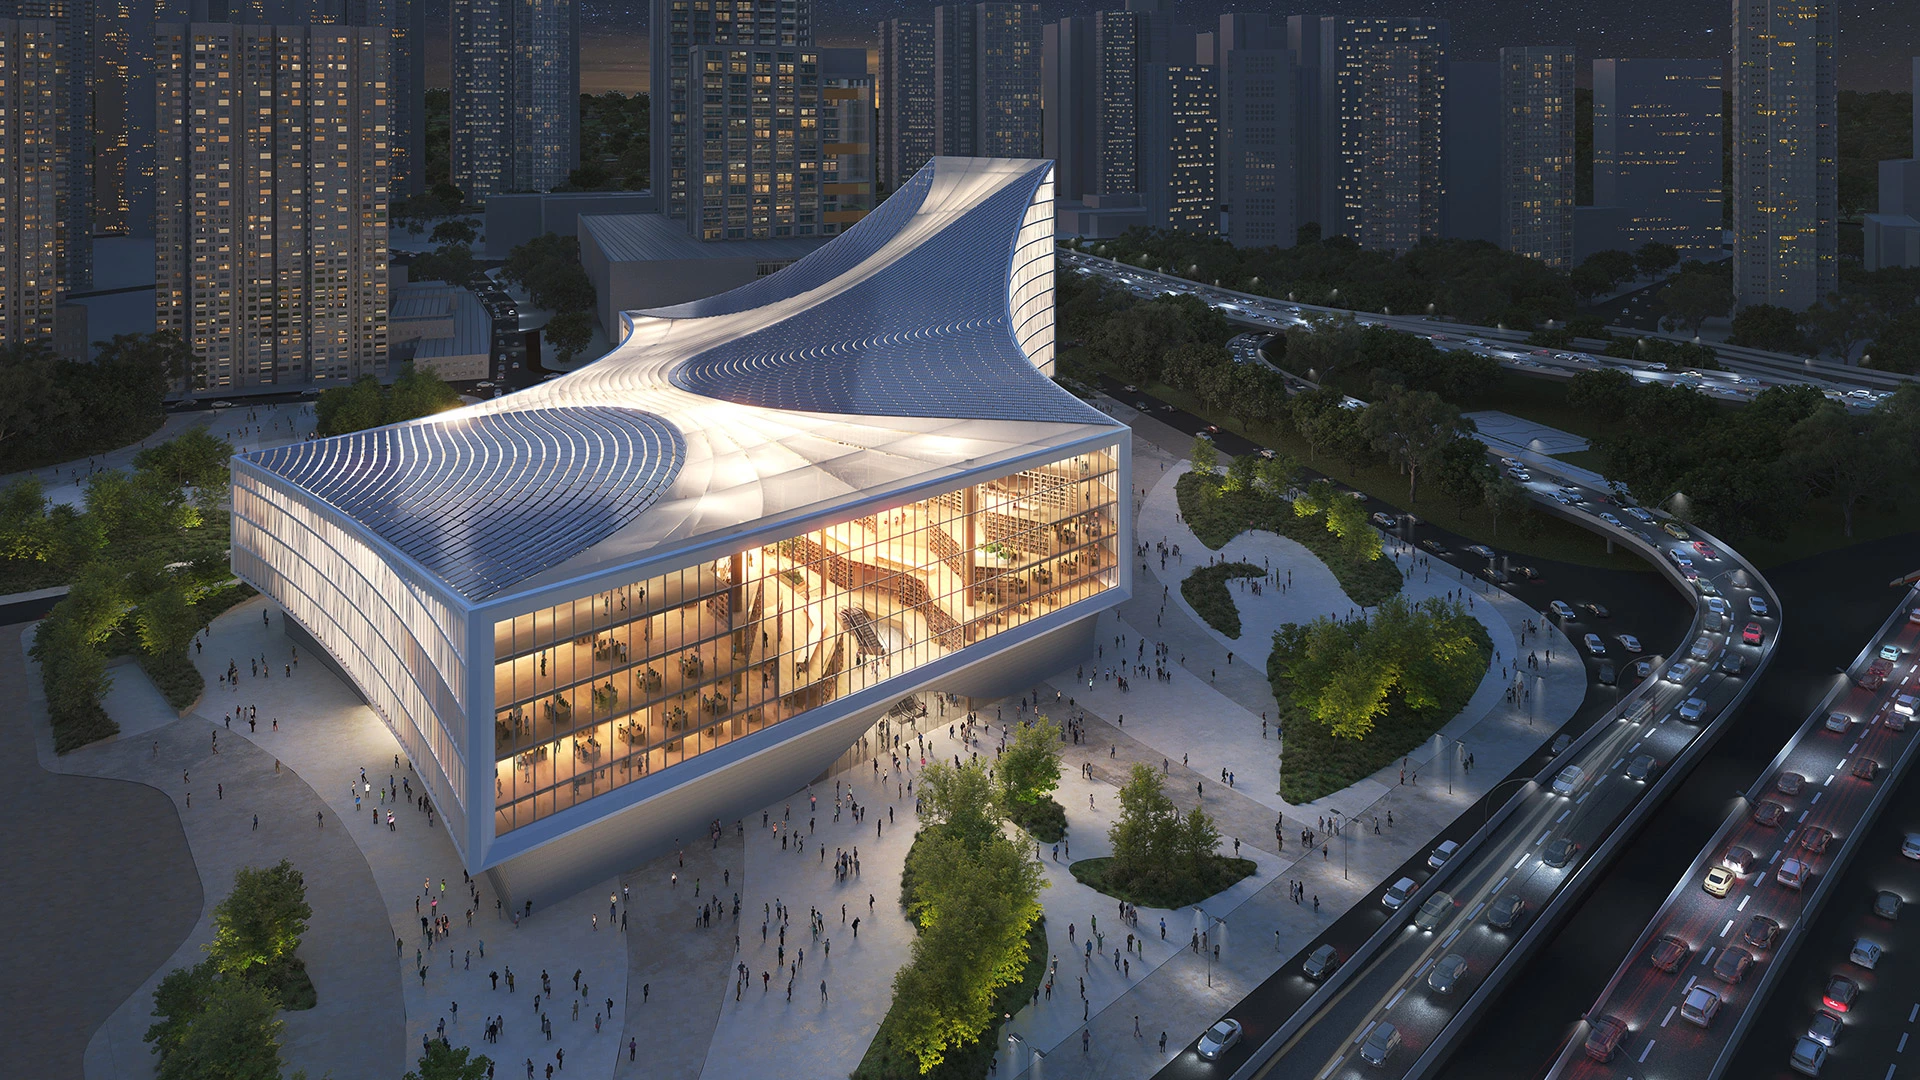 Посмотрите на огромную библиотеку будущего в Китае. Фотогалерея